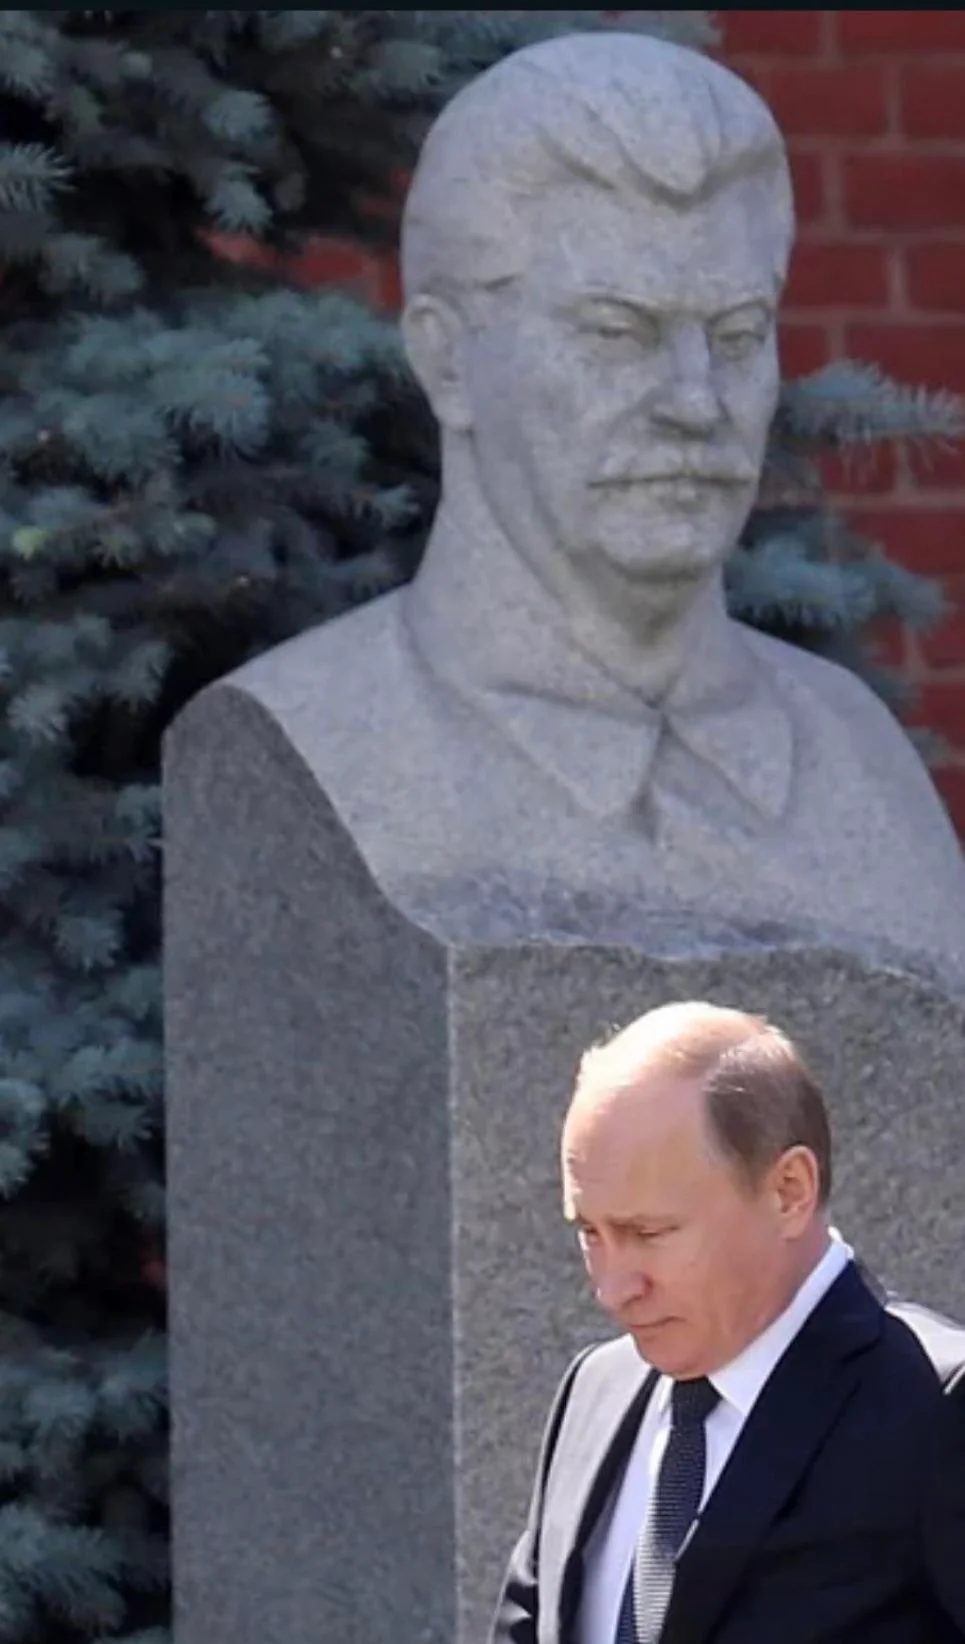 Stalin judging Putin Blank Meme Template